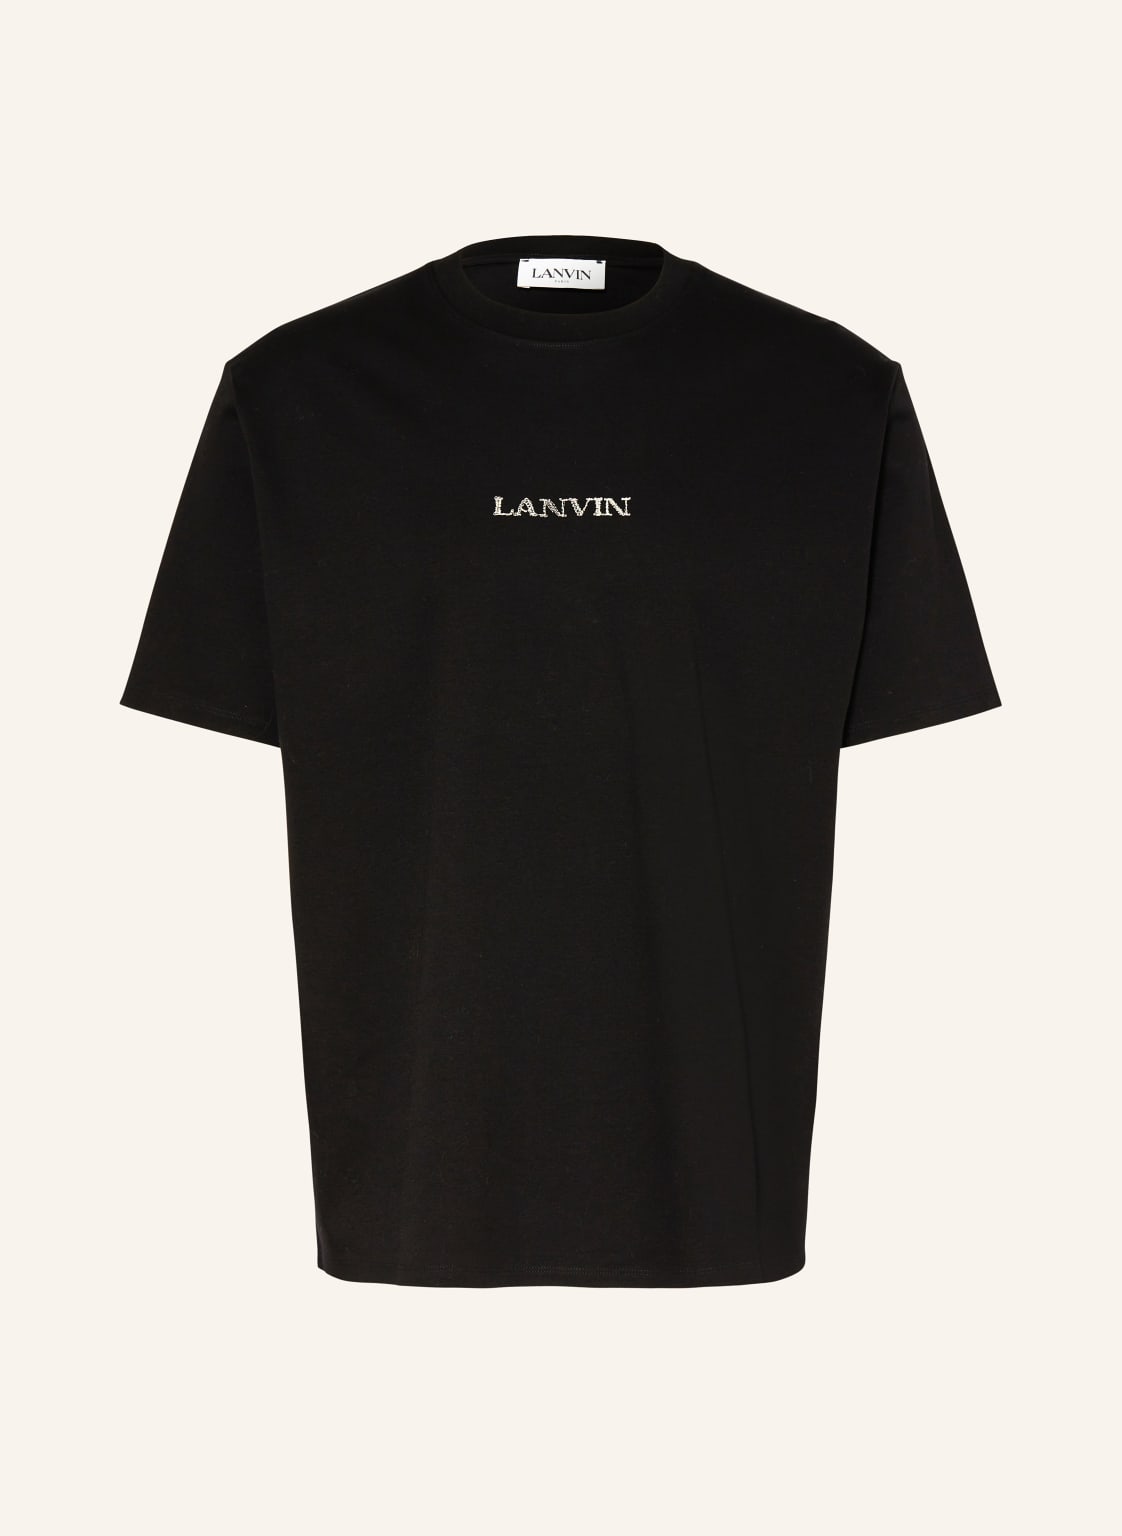 Lanvin T-Shirt schwarz von LANVIN